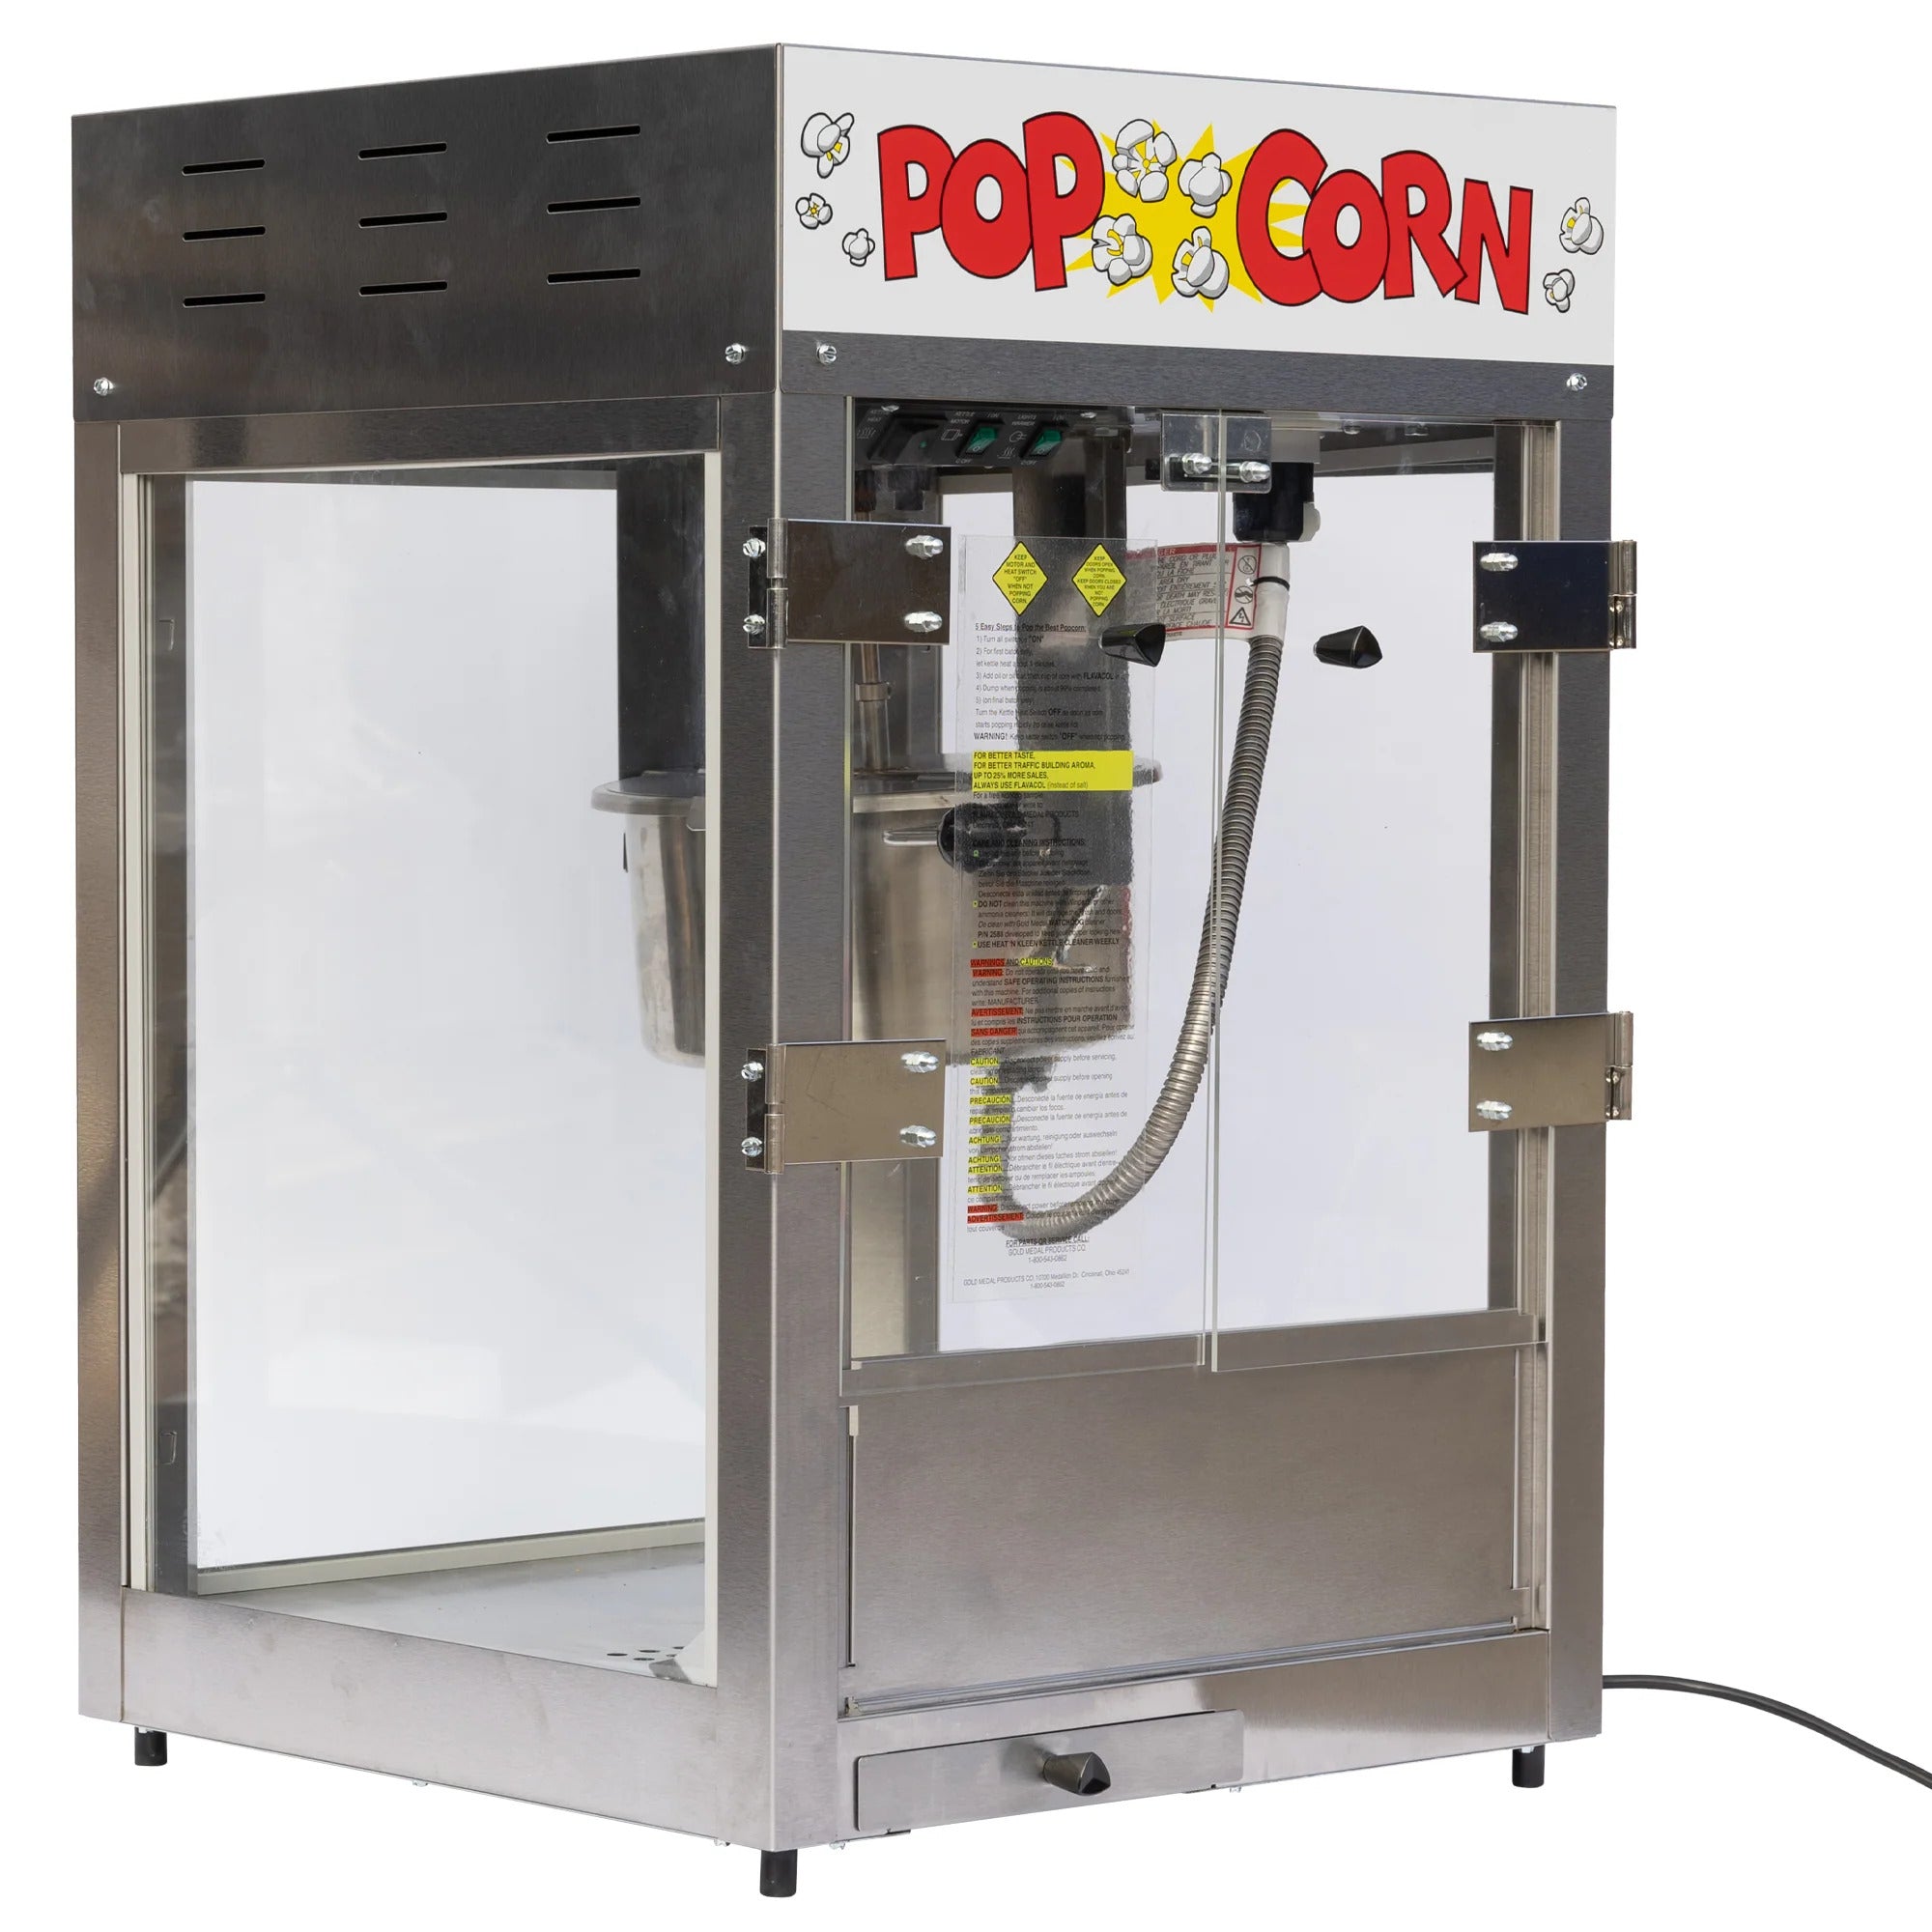 Super Pop Maxx 16oz Popcorn Machine - MF